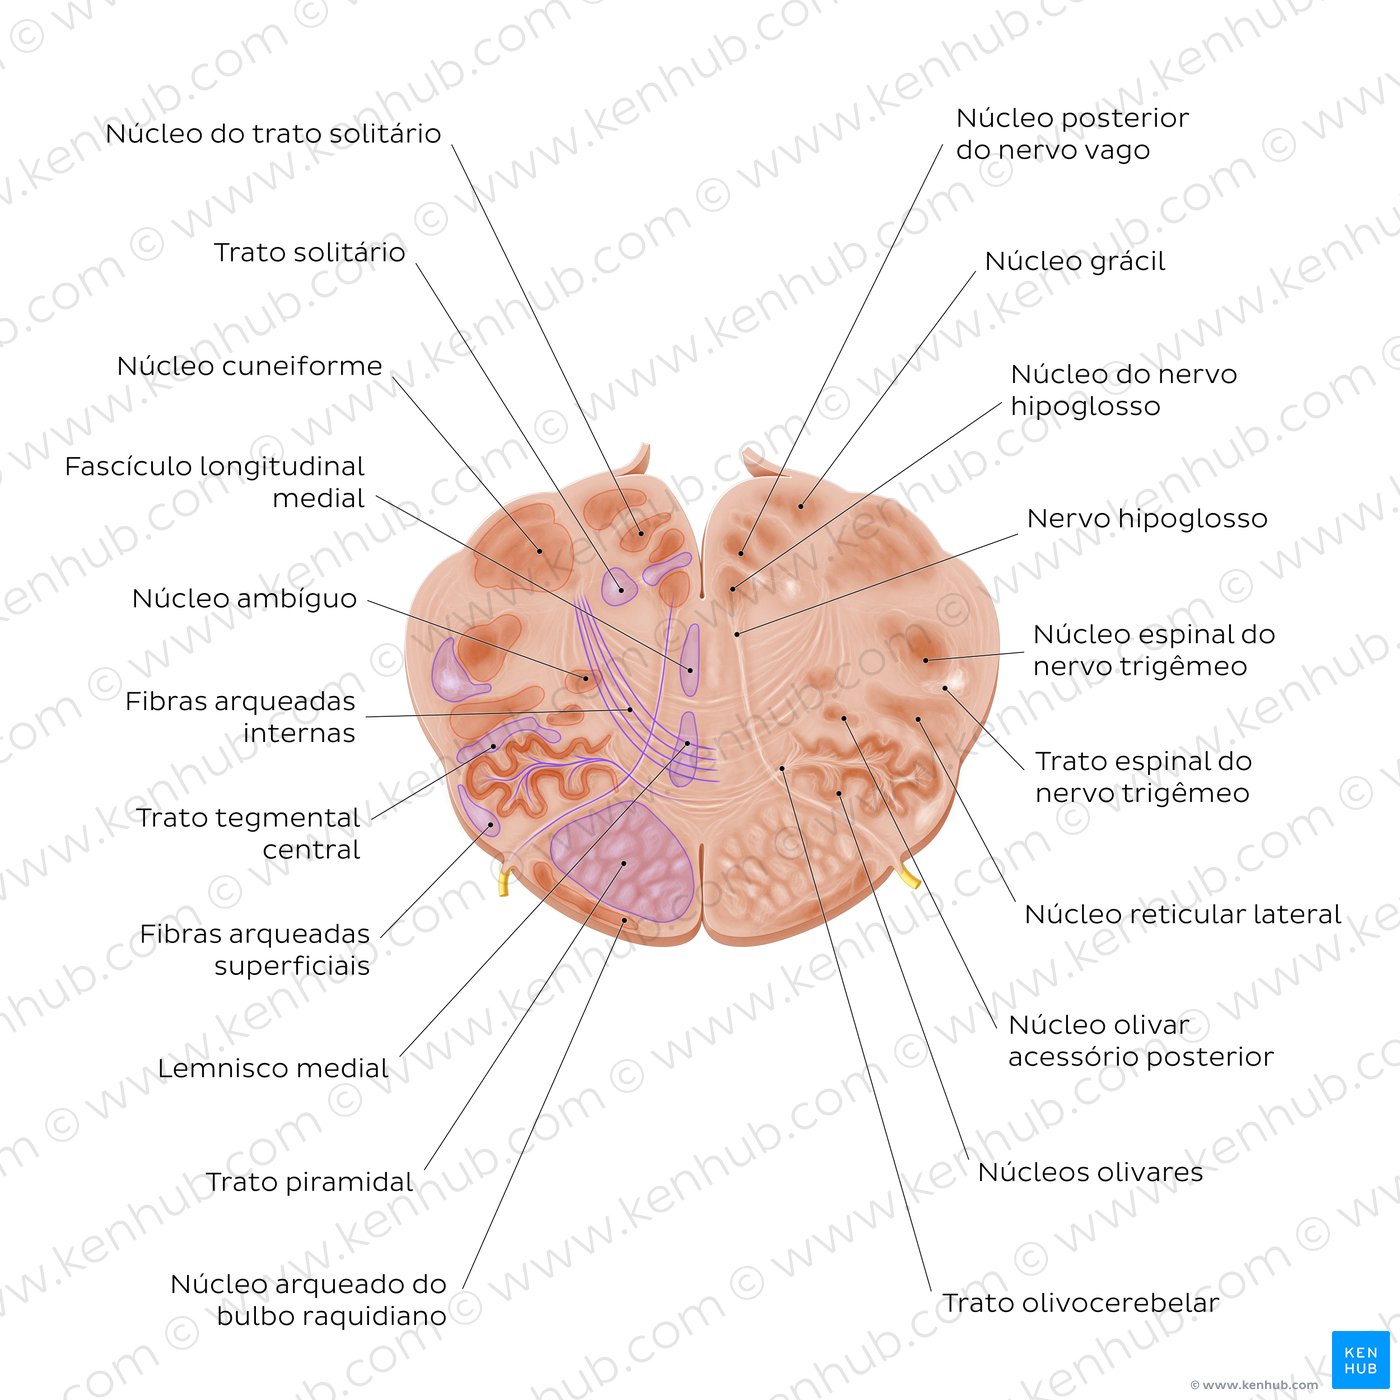 Secção transversal do bulbo ao nível do nervo hipoglosso